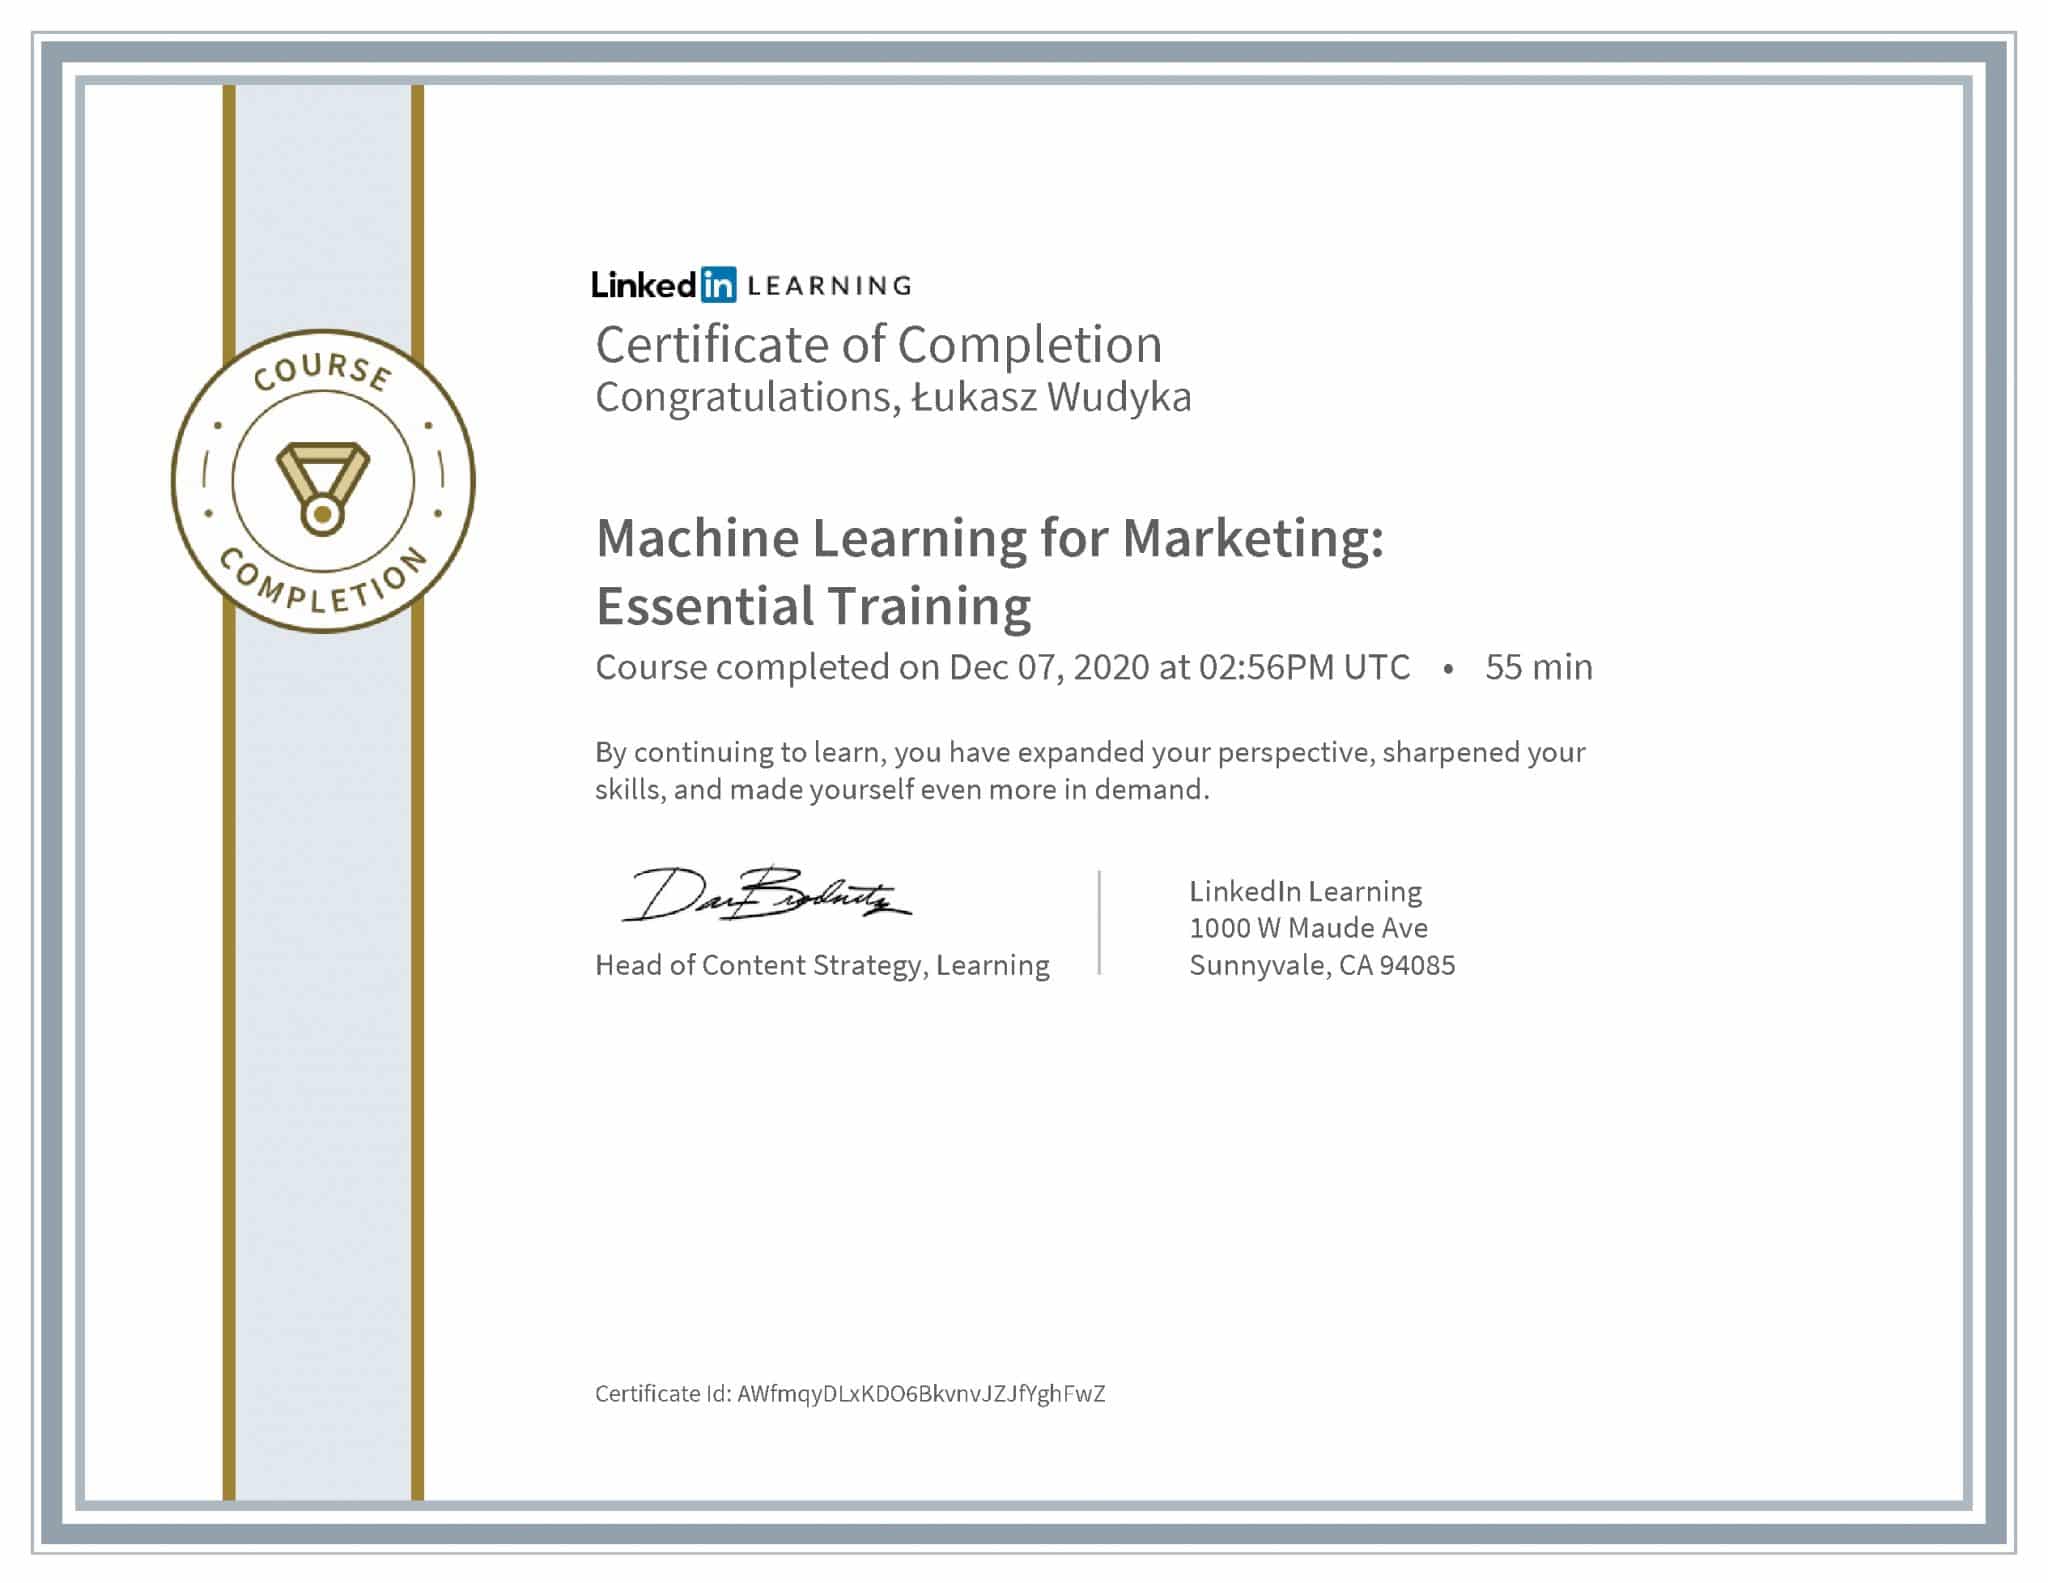 Łukasz Wudyka certyfikat LinkedIn Machine Learning for Marketing: Essential Training